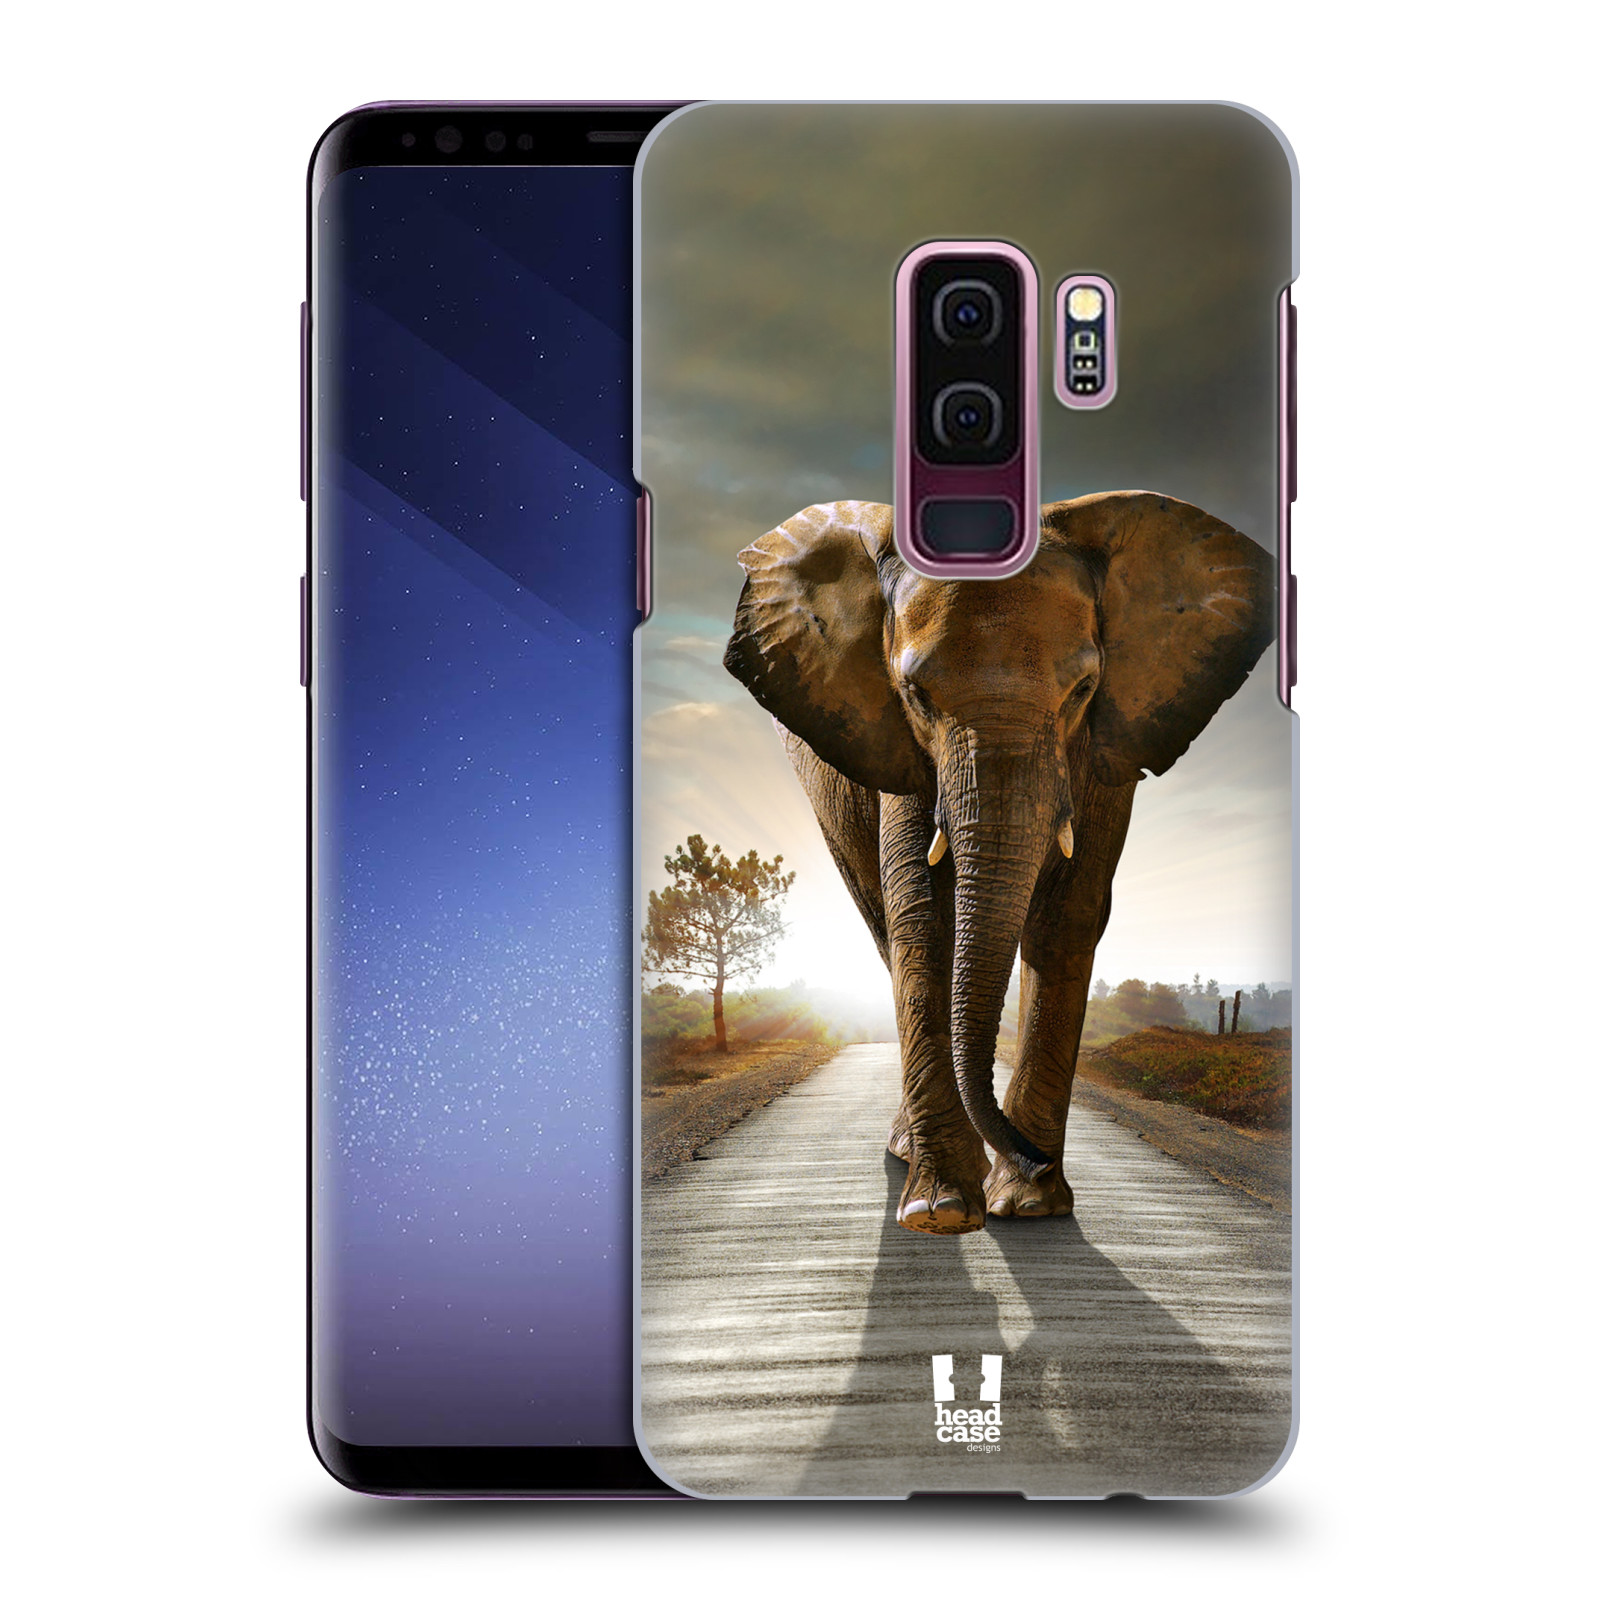 Zadní obal pro mobil Samsung Galaxy S9 PLUS - HEAD CASE - Svět zvířat kráčející slon